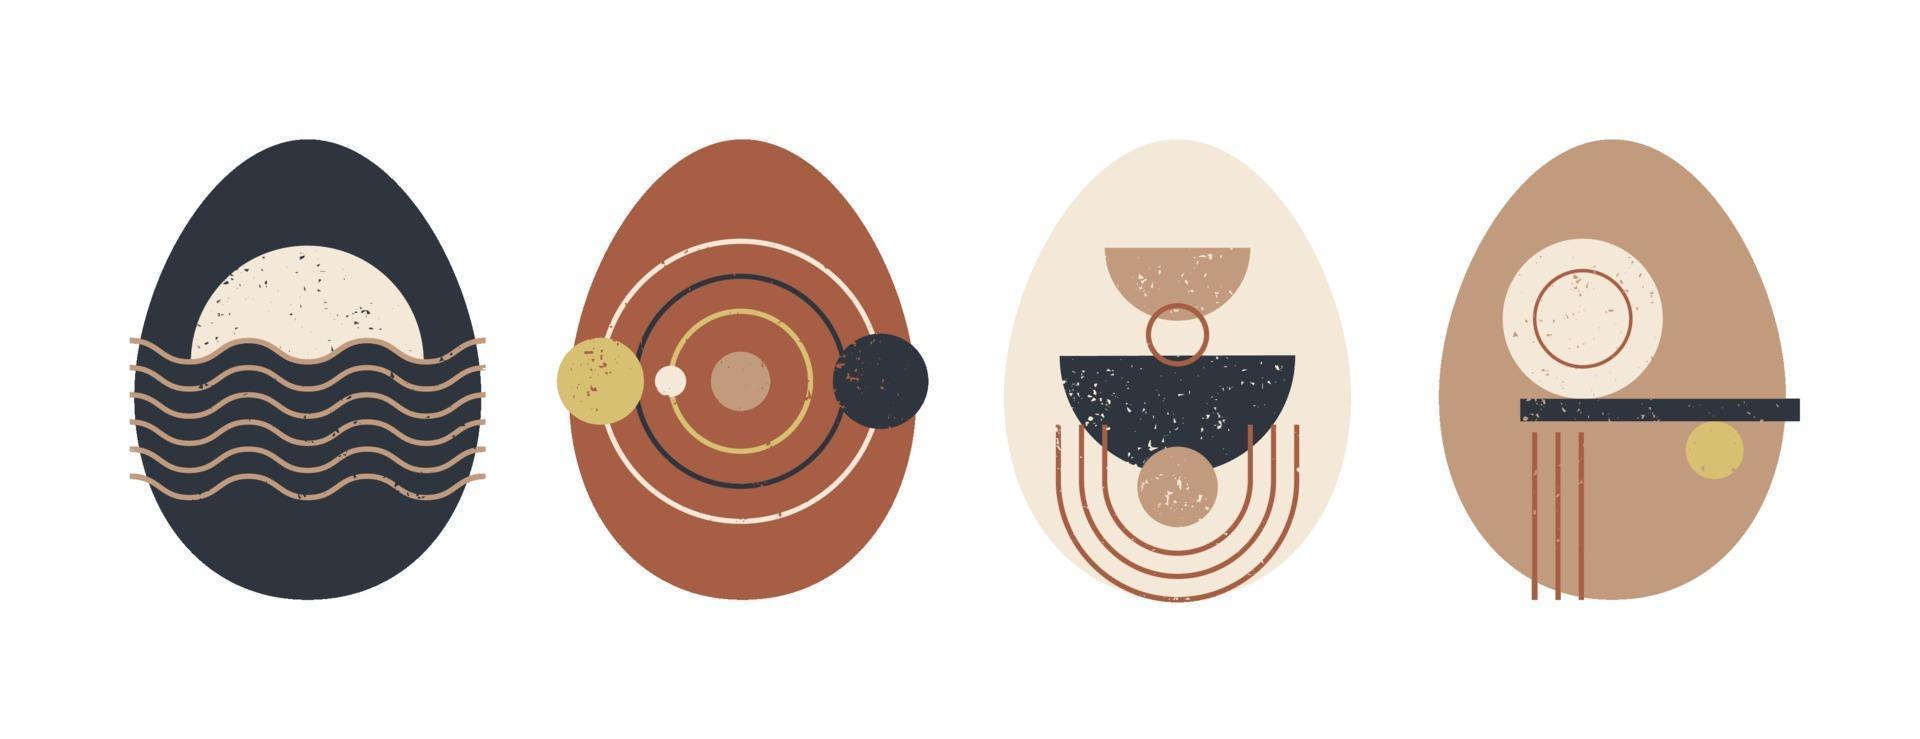 conjunto de ovo de Páscoa geométrico minimalista com elementos de forma geométrica. boho moderno ilustração do vetor de modelos abstratos da moda criativos contemporâneos.